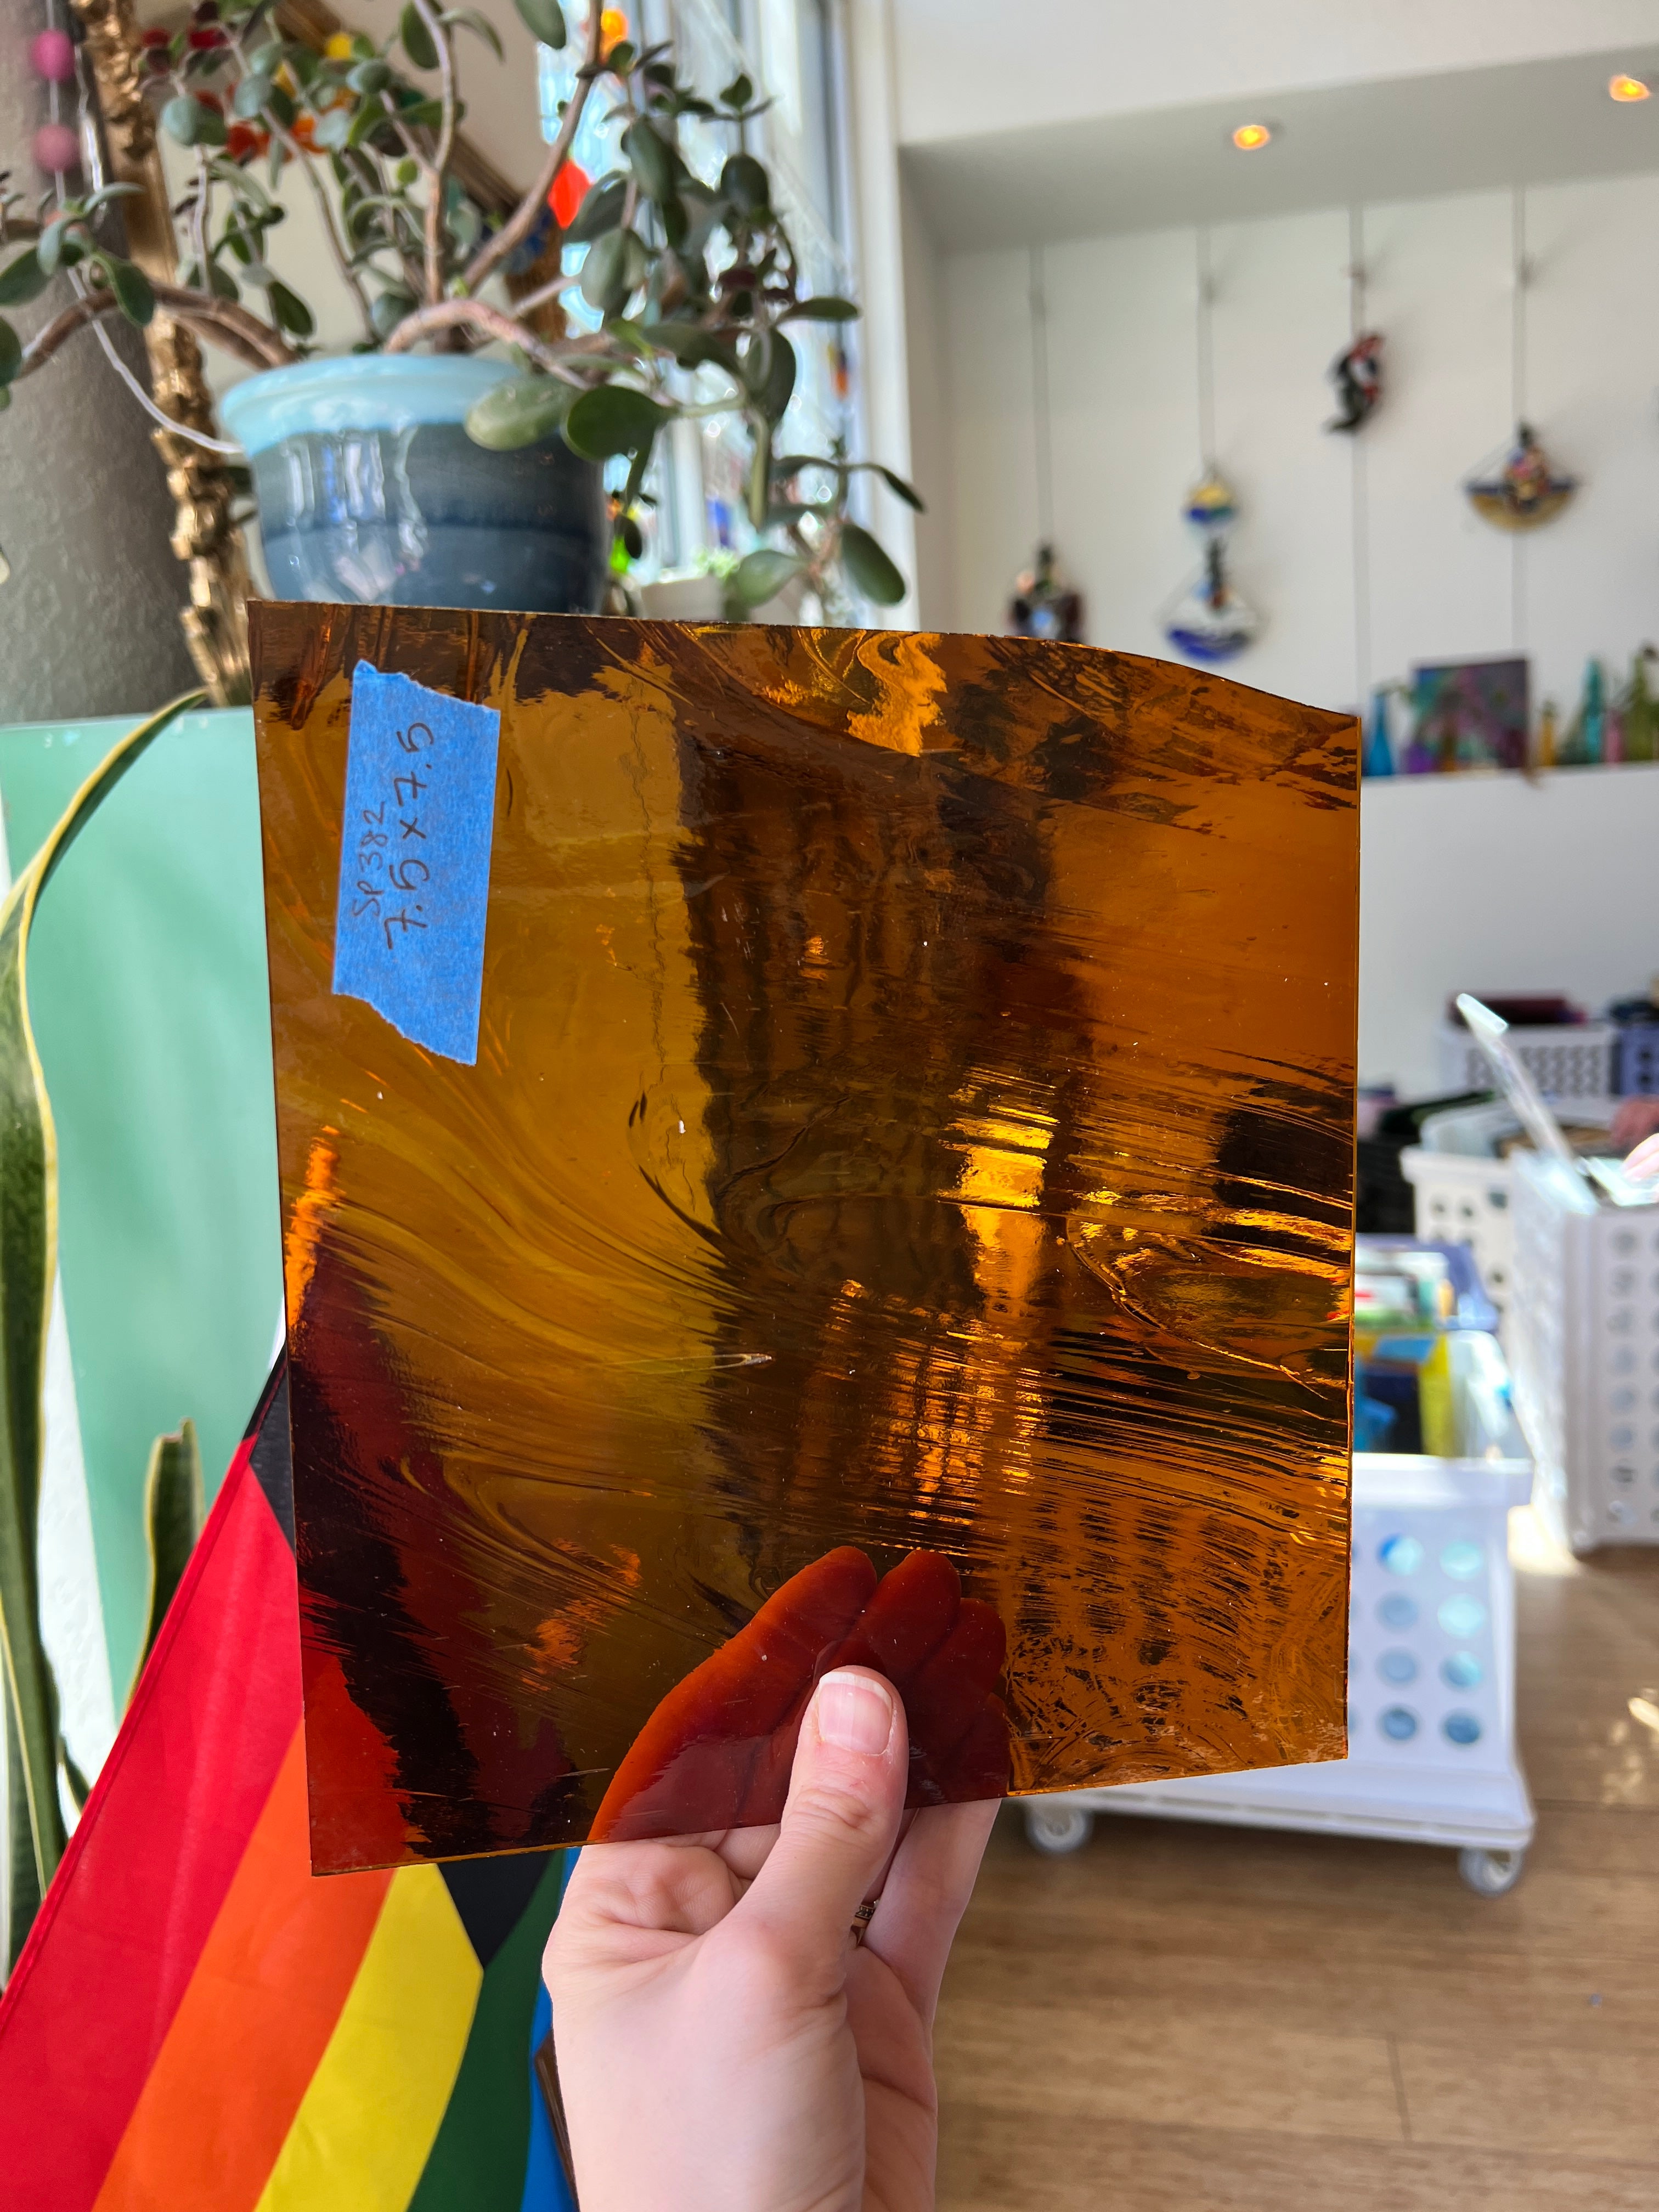 Amber Wispy Baroque - Spectrum Sheet Glass Colorado Glass Works SP382 (7.5x7.5in)  